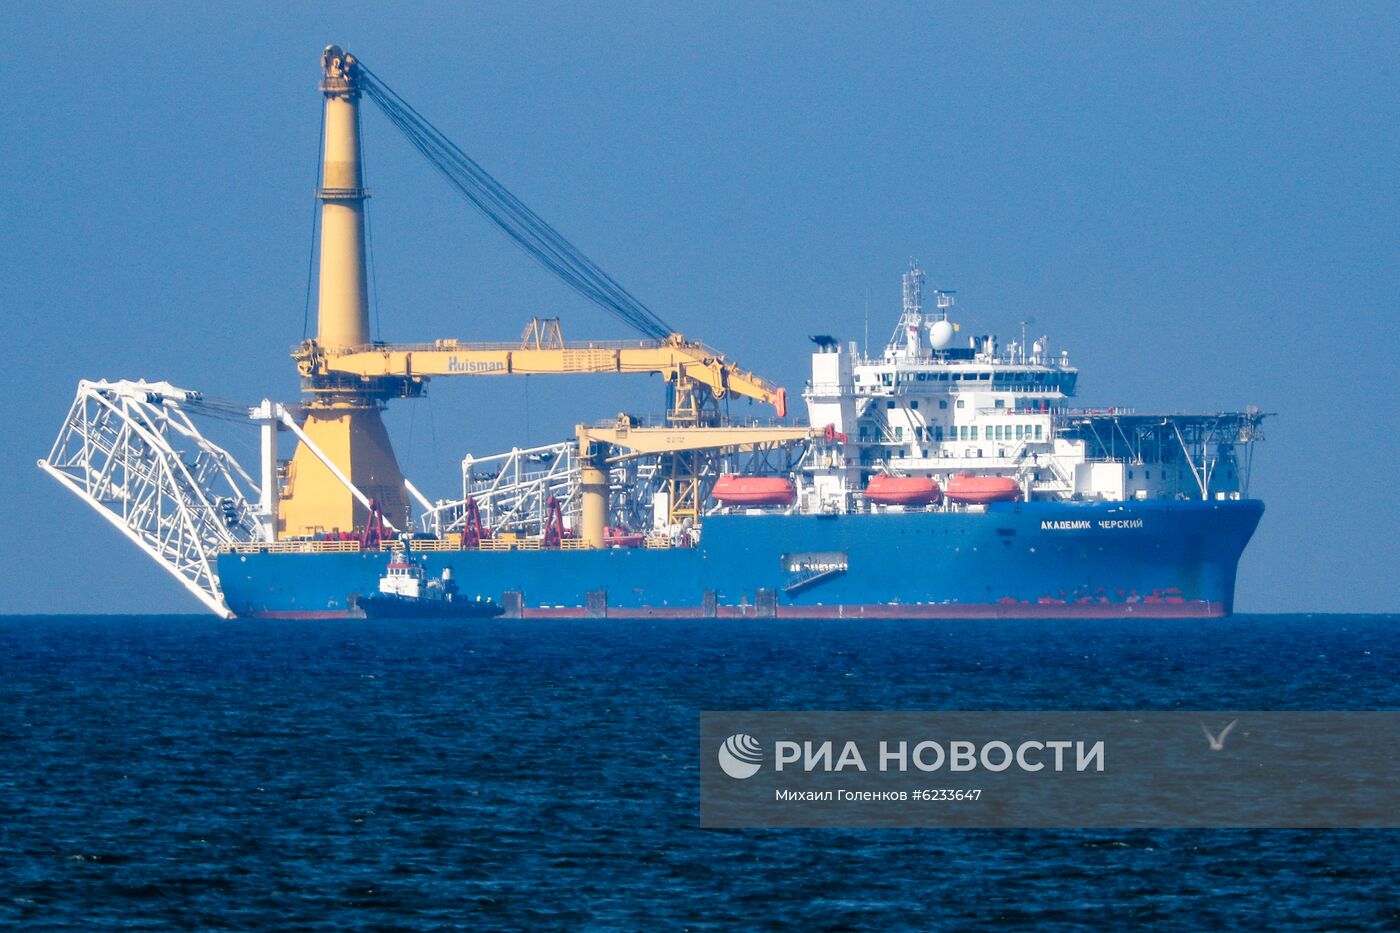 Прибытие трубоукладчика "Академик Черский" в порт Калининграда